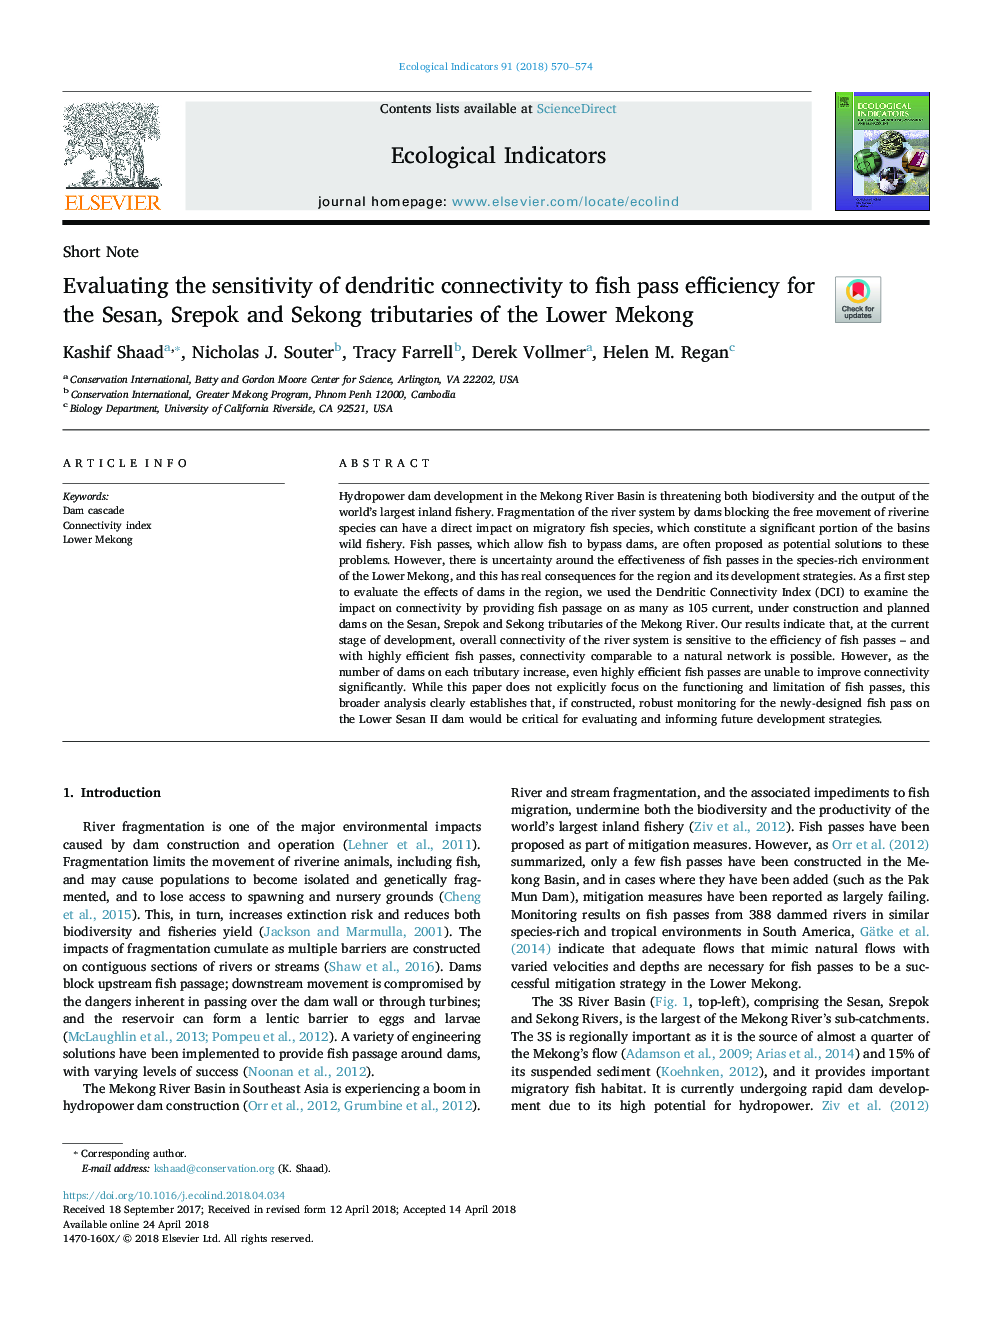 ارزیابی حساسیت اتصالات دندریتیک به بازدهی ماهی در رودخانه های سزان، شرپک و سکونگ در پایین مکونگ 